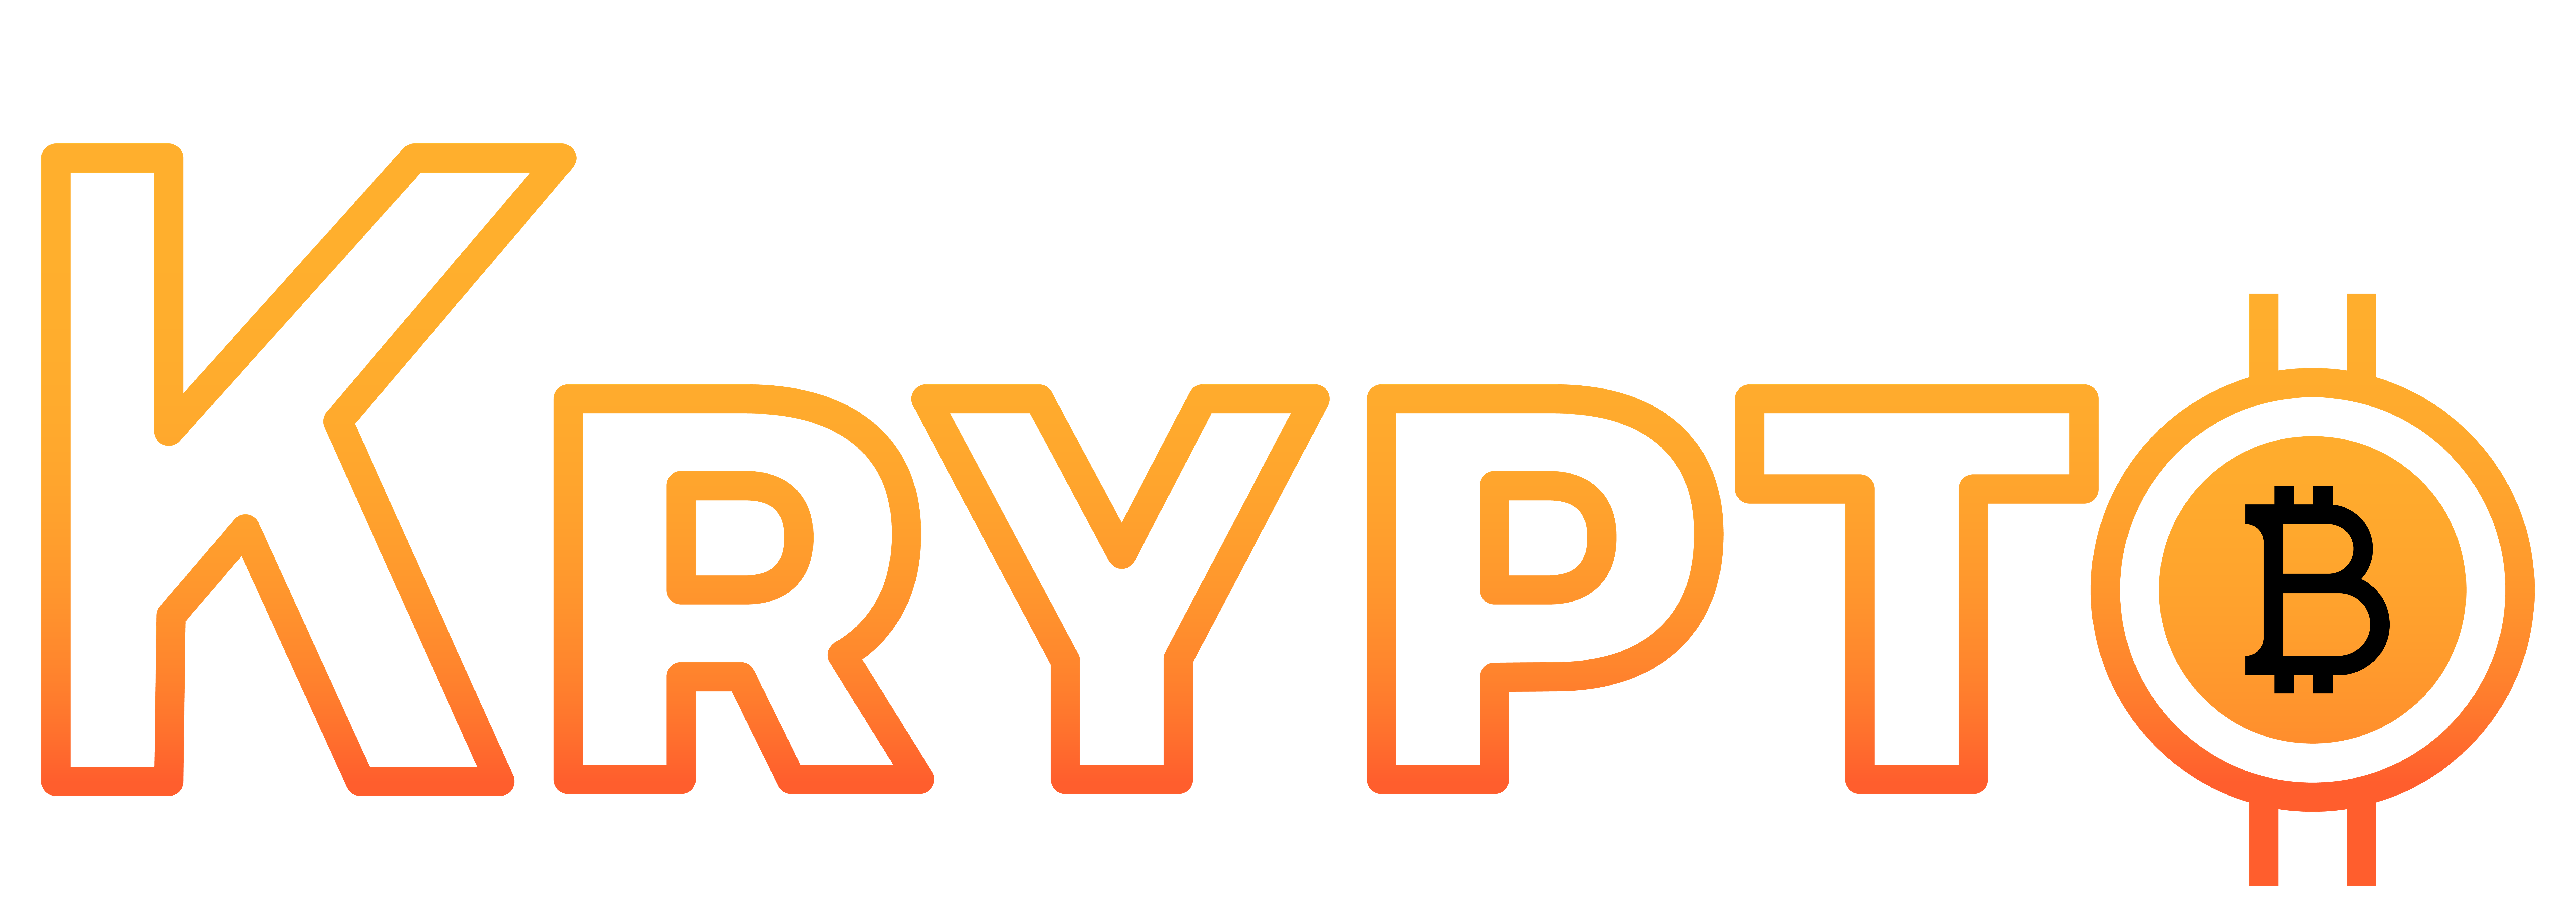 casinokrypto.com